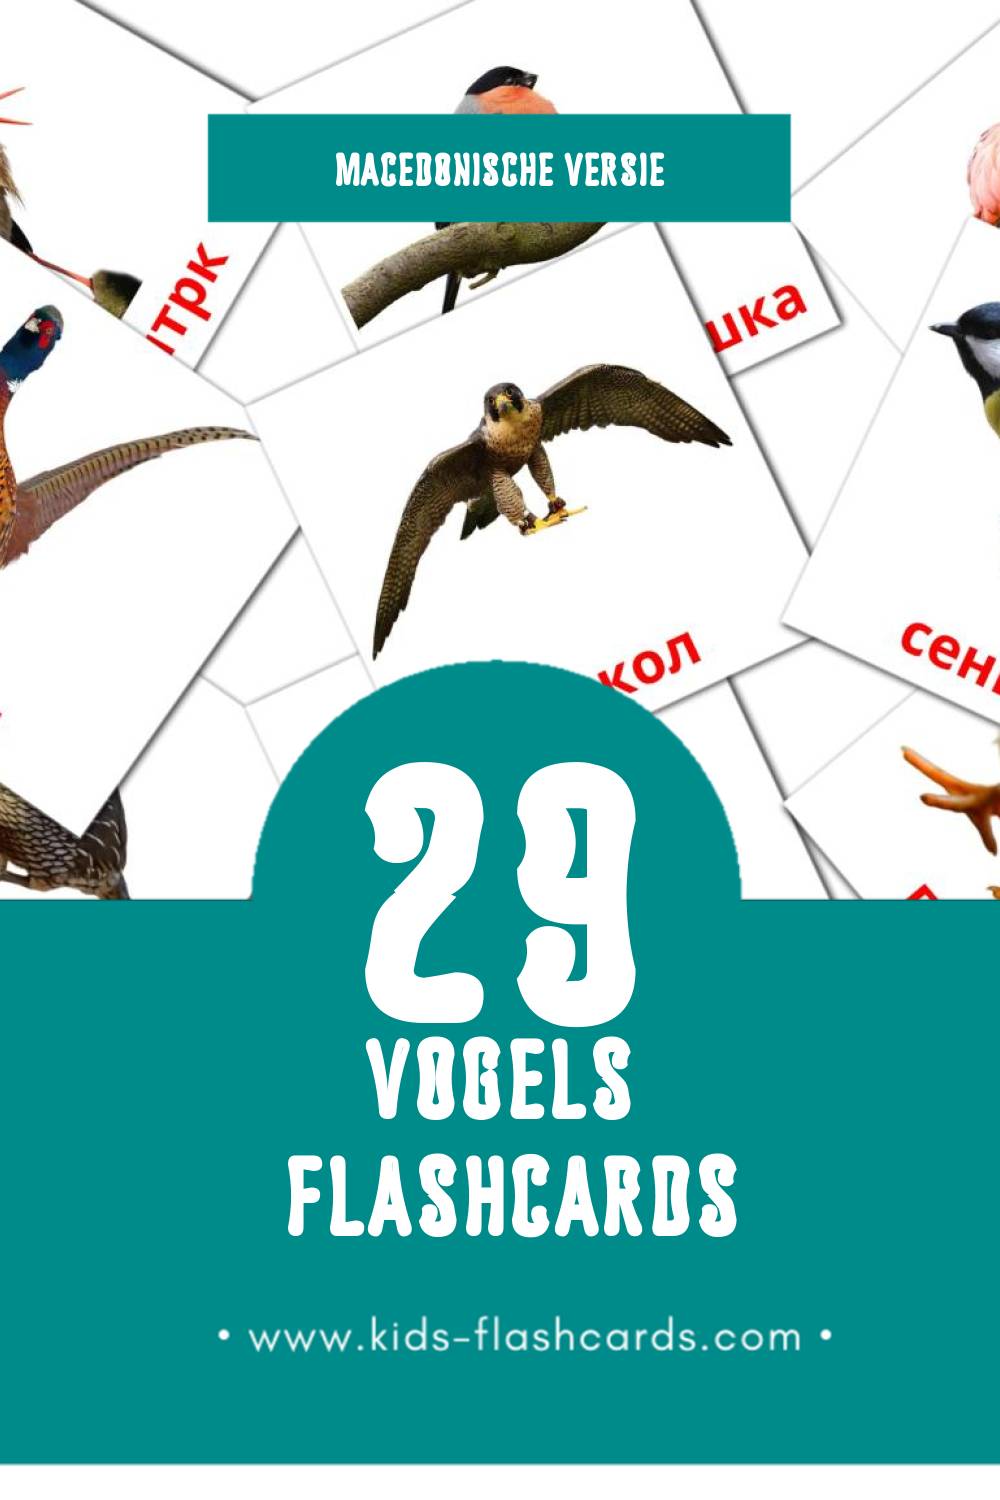 Visuele Птици  Flashcards voor Kleuters (29 kaarten in het Macedonisch)